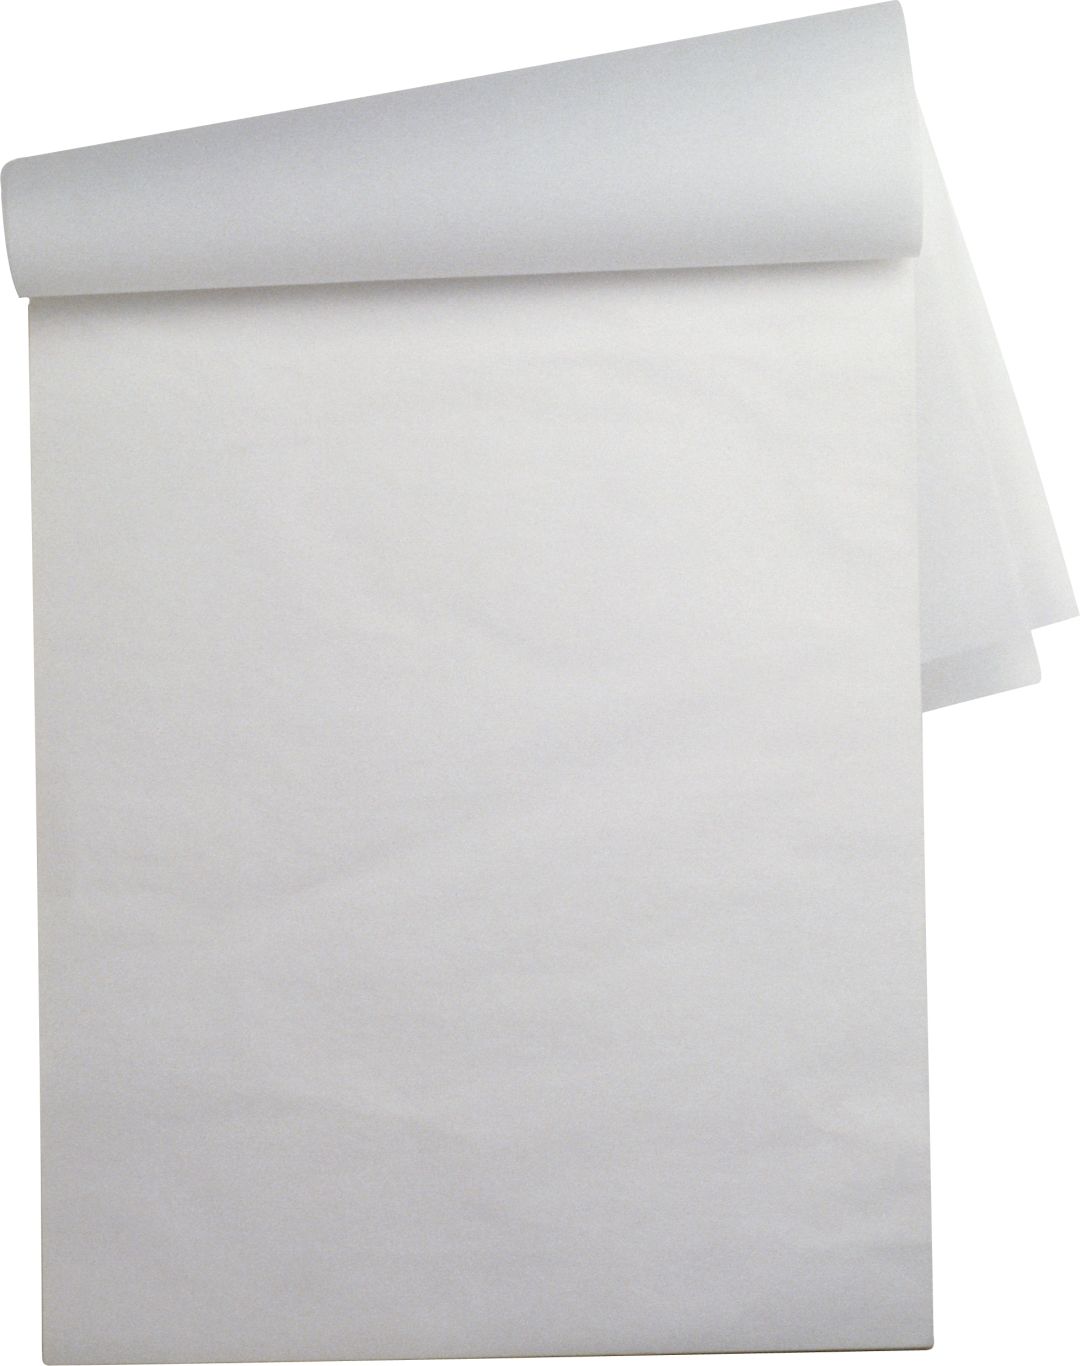 Paper sheet PNG image    图片编号:7233